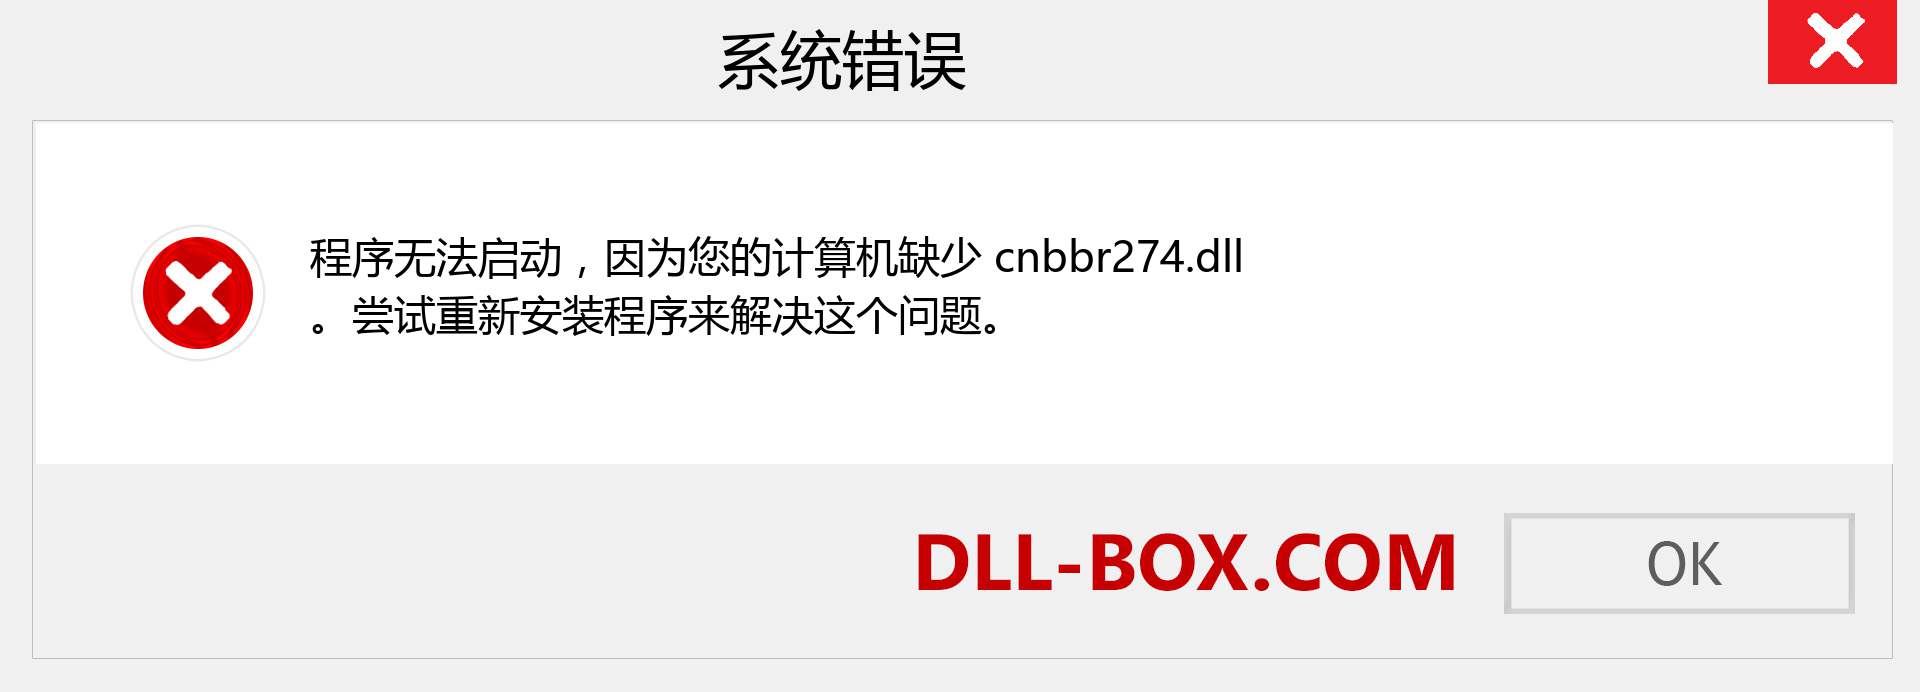 cnbbr274.dll 文件丢失？。 适用于 Windows 7、8、10 的下载 - 修复 Windows、照片、图像上的 cnbbr274 dll 丢失错误